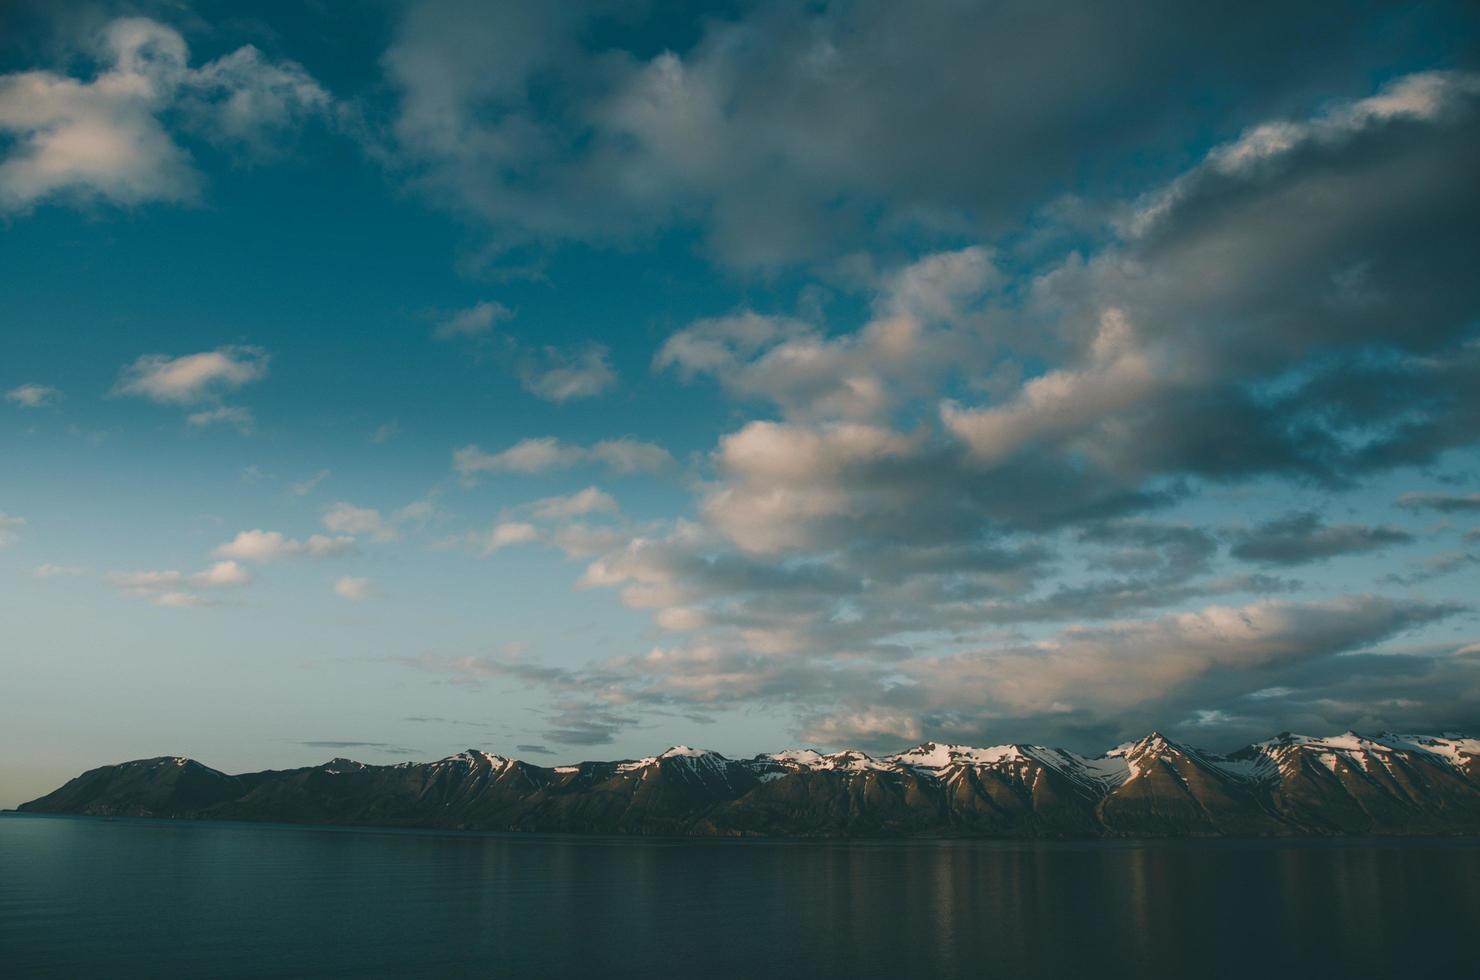 paisaje de las montañas de dalvik foto